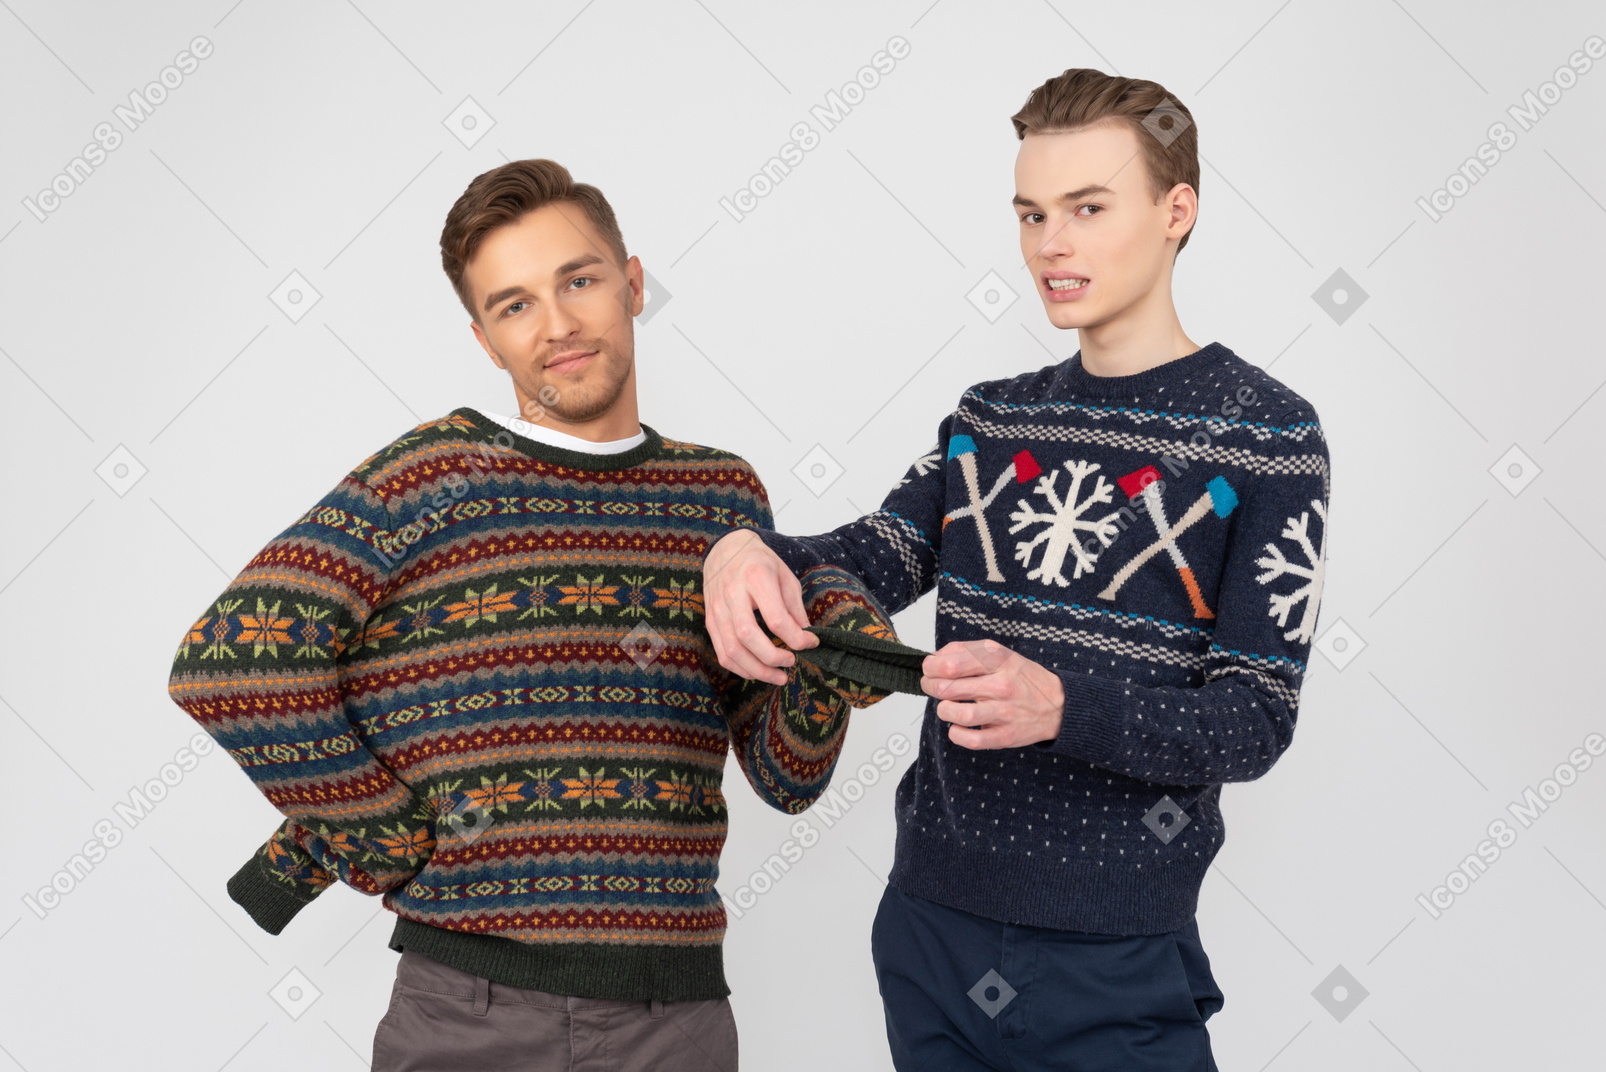 동생의 스웨터 소매를 고치려는 남자